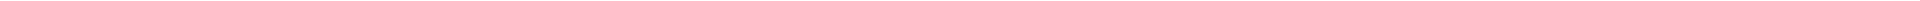 Лечение кариеса зубов - цены в Астане (Нур-Султан), Алматы, Атырау, Усть-Каменогорск, Уральск, Кокшетау в Казахстане, фото 21